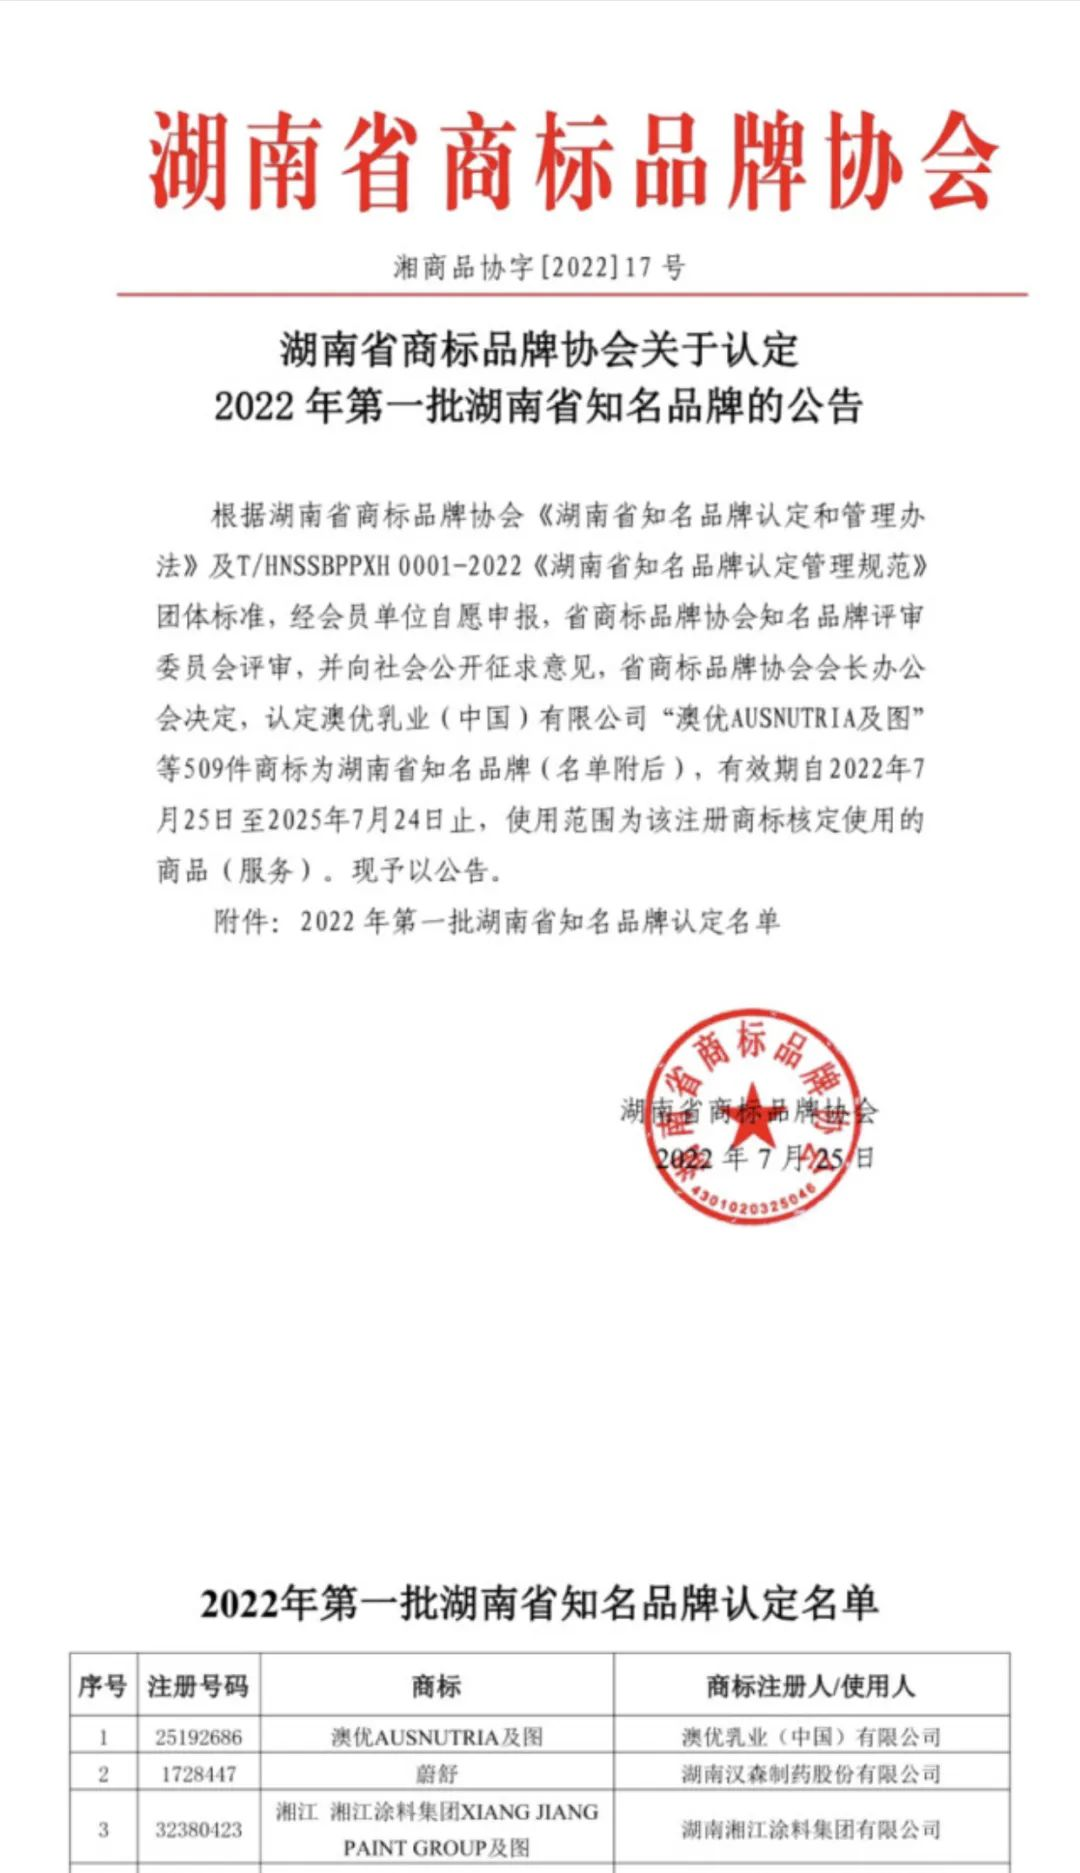 金六福尚美被认定为”2022年第一批湖南省知名品牌”